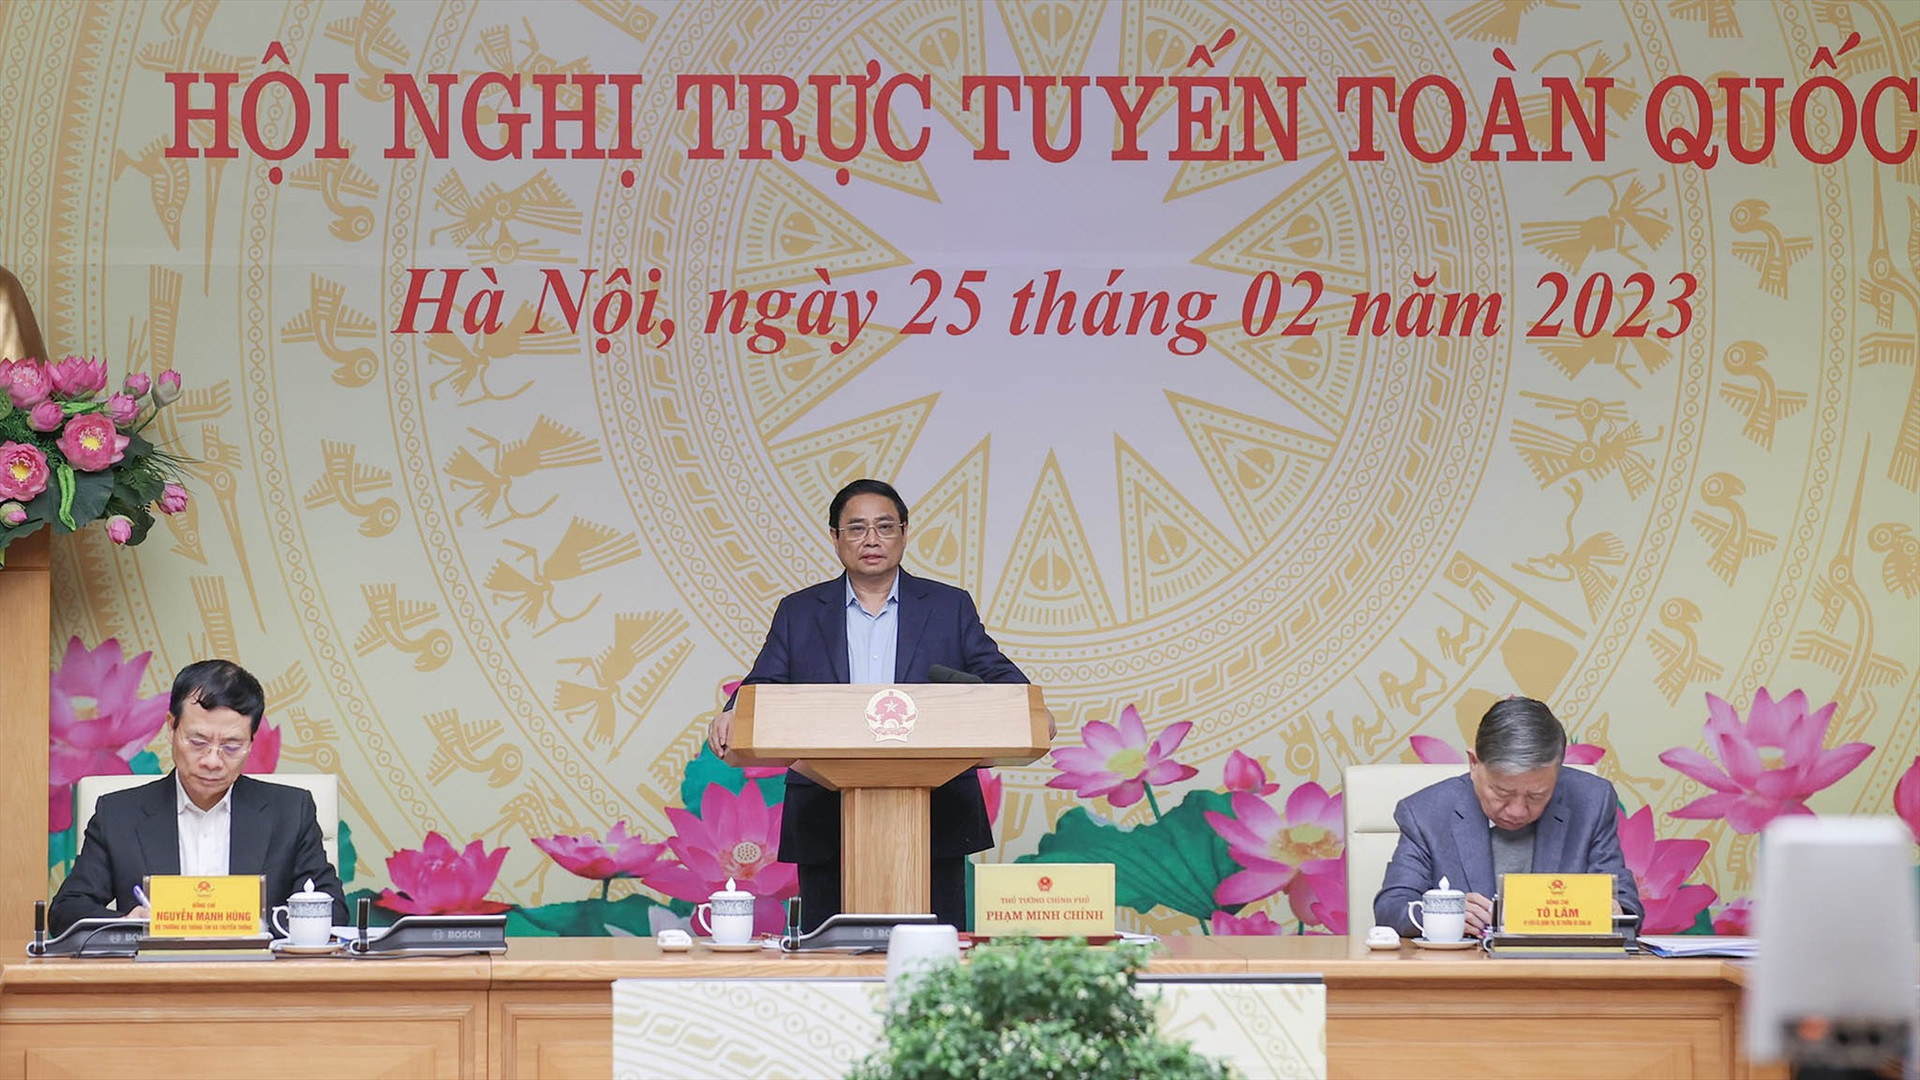 Thủ tướng Chính phủ Phạm Minh Chính, Chủ tịch Ủy ban quốc gia về chuyển đổi số chủ trì hội nghị trực tuyến ngày 25/2 về chuyển đổi số.